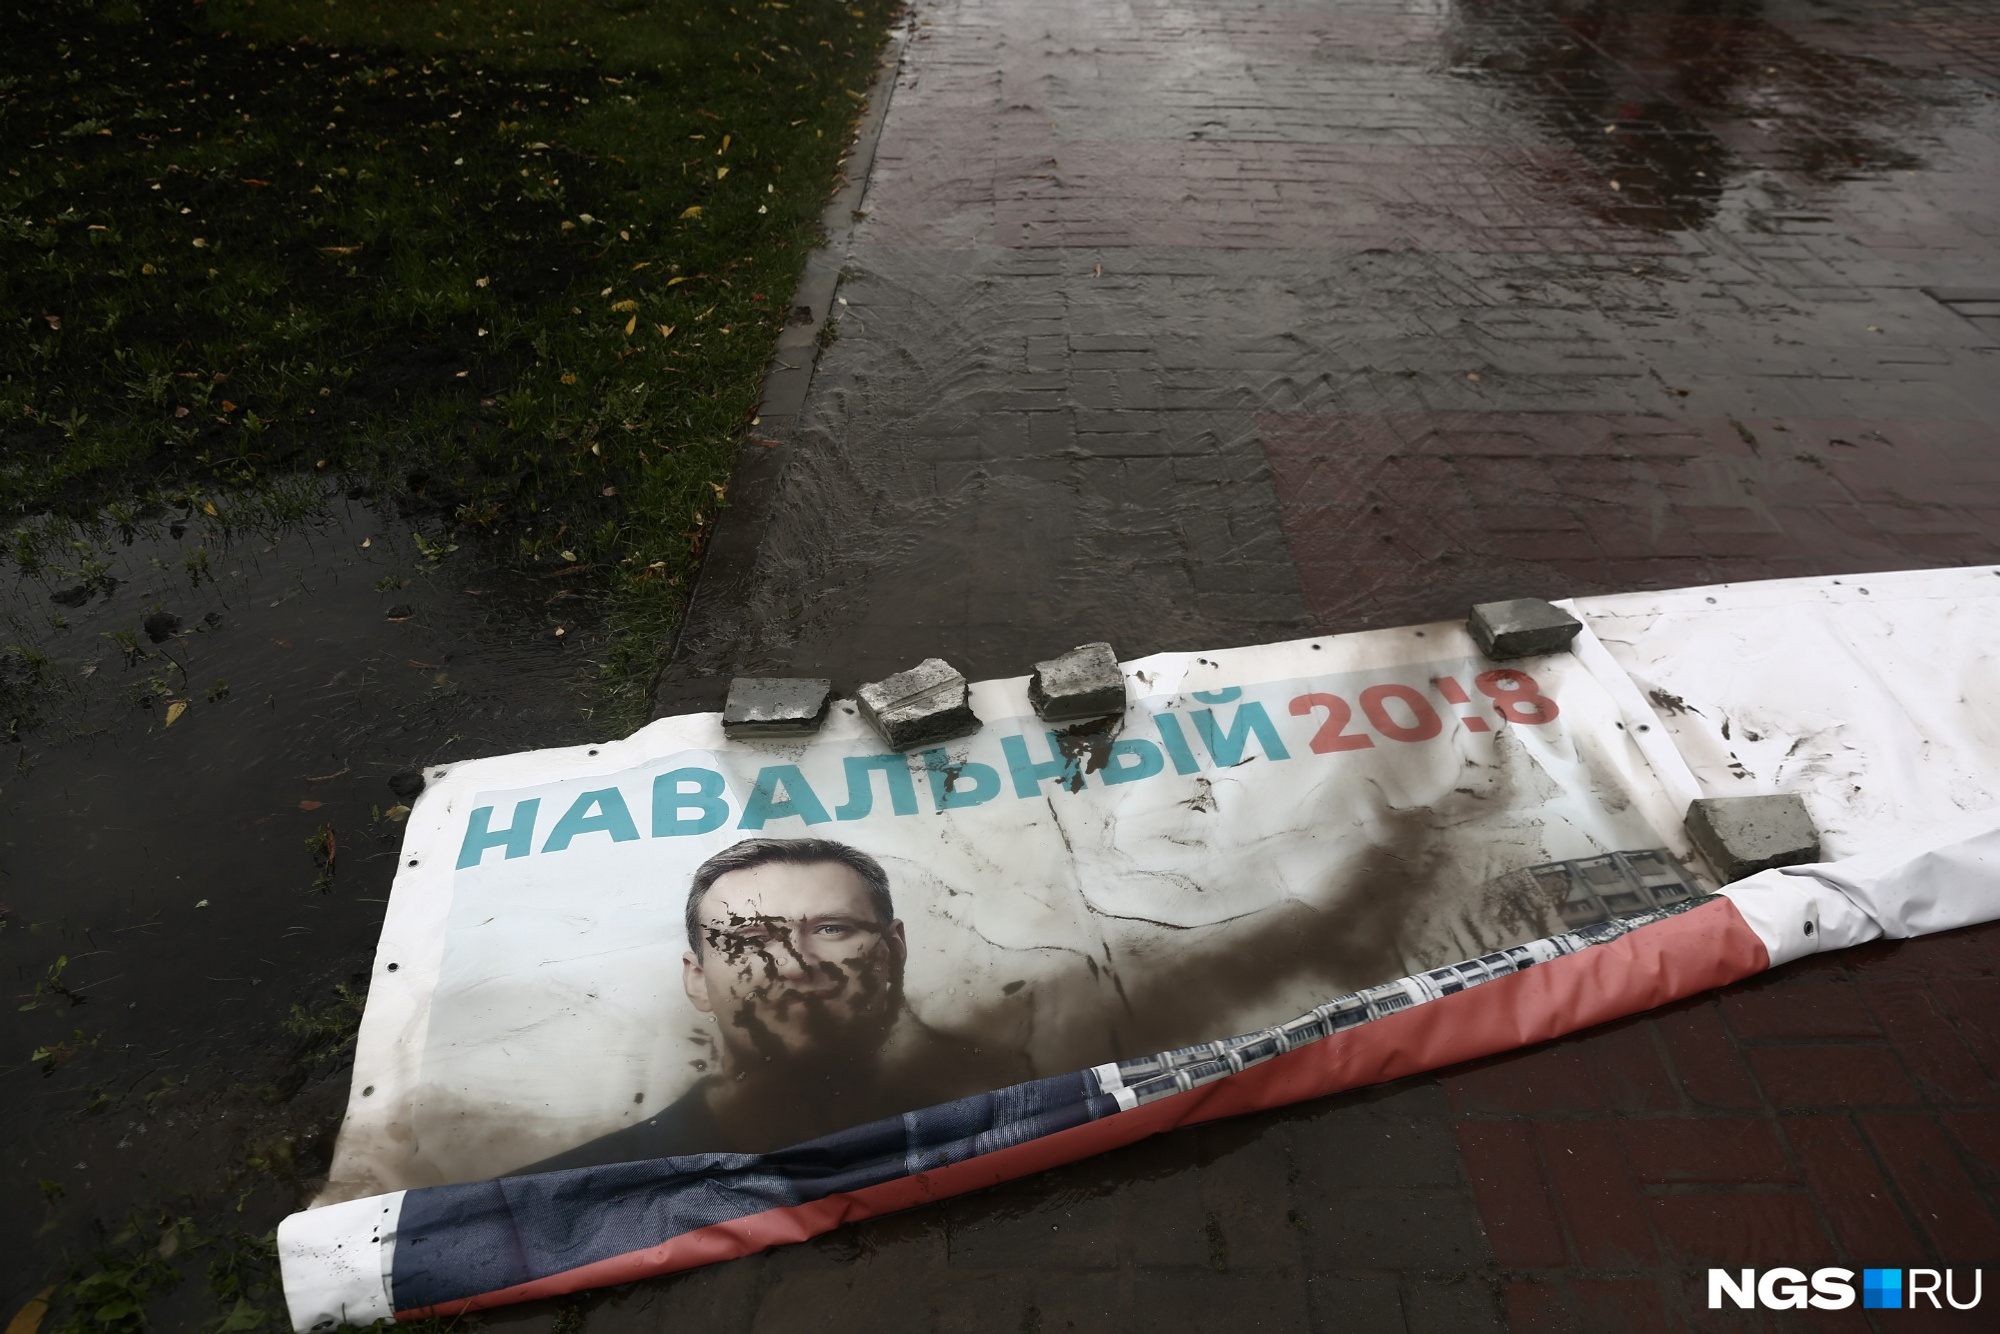 Последствия потопа на набережной — плакаты с Навальным в грязи. Фото Александра Ощепкова